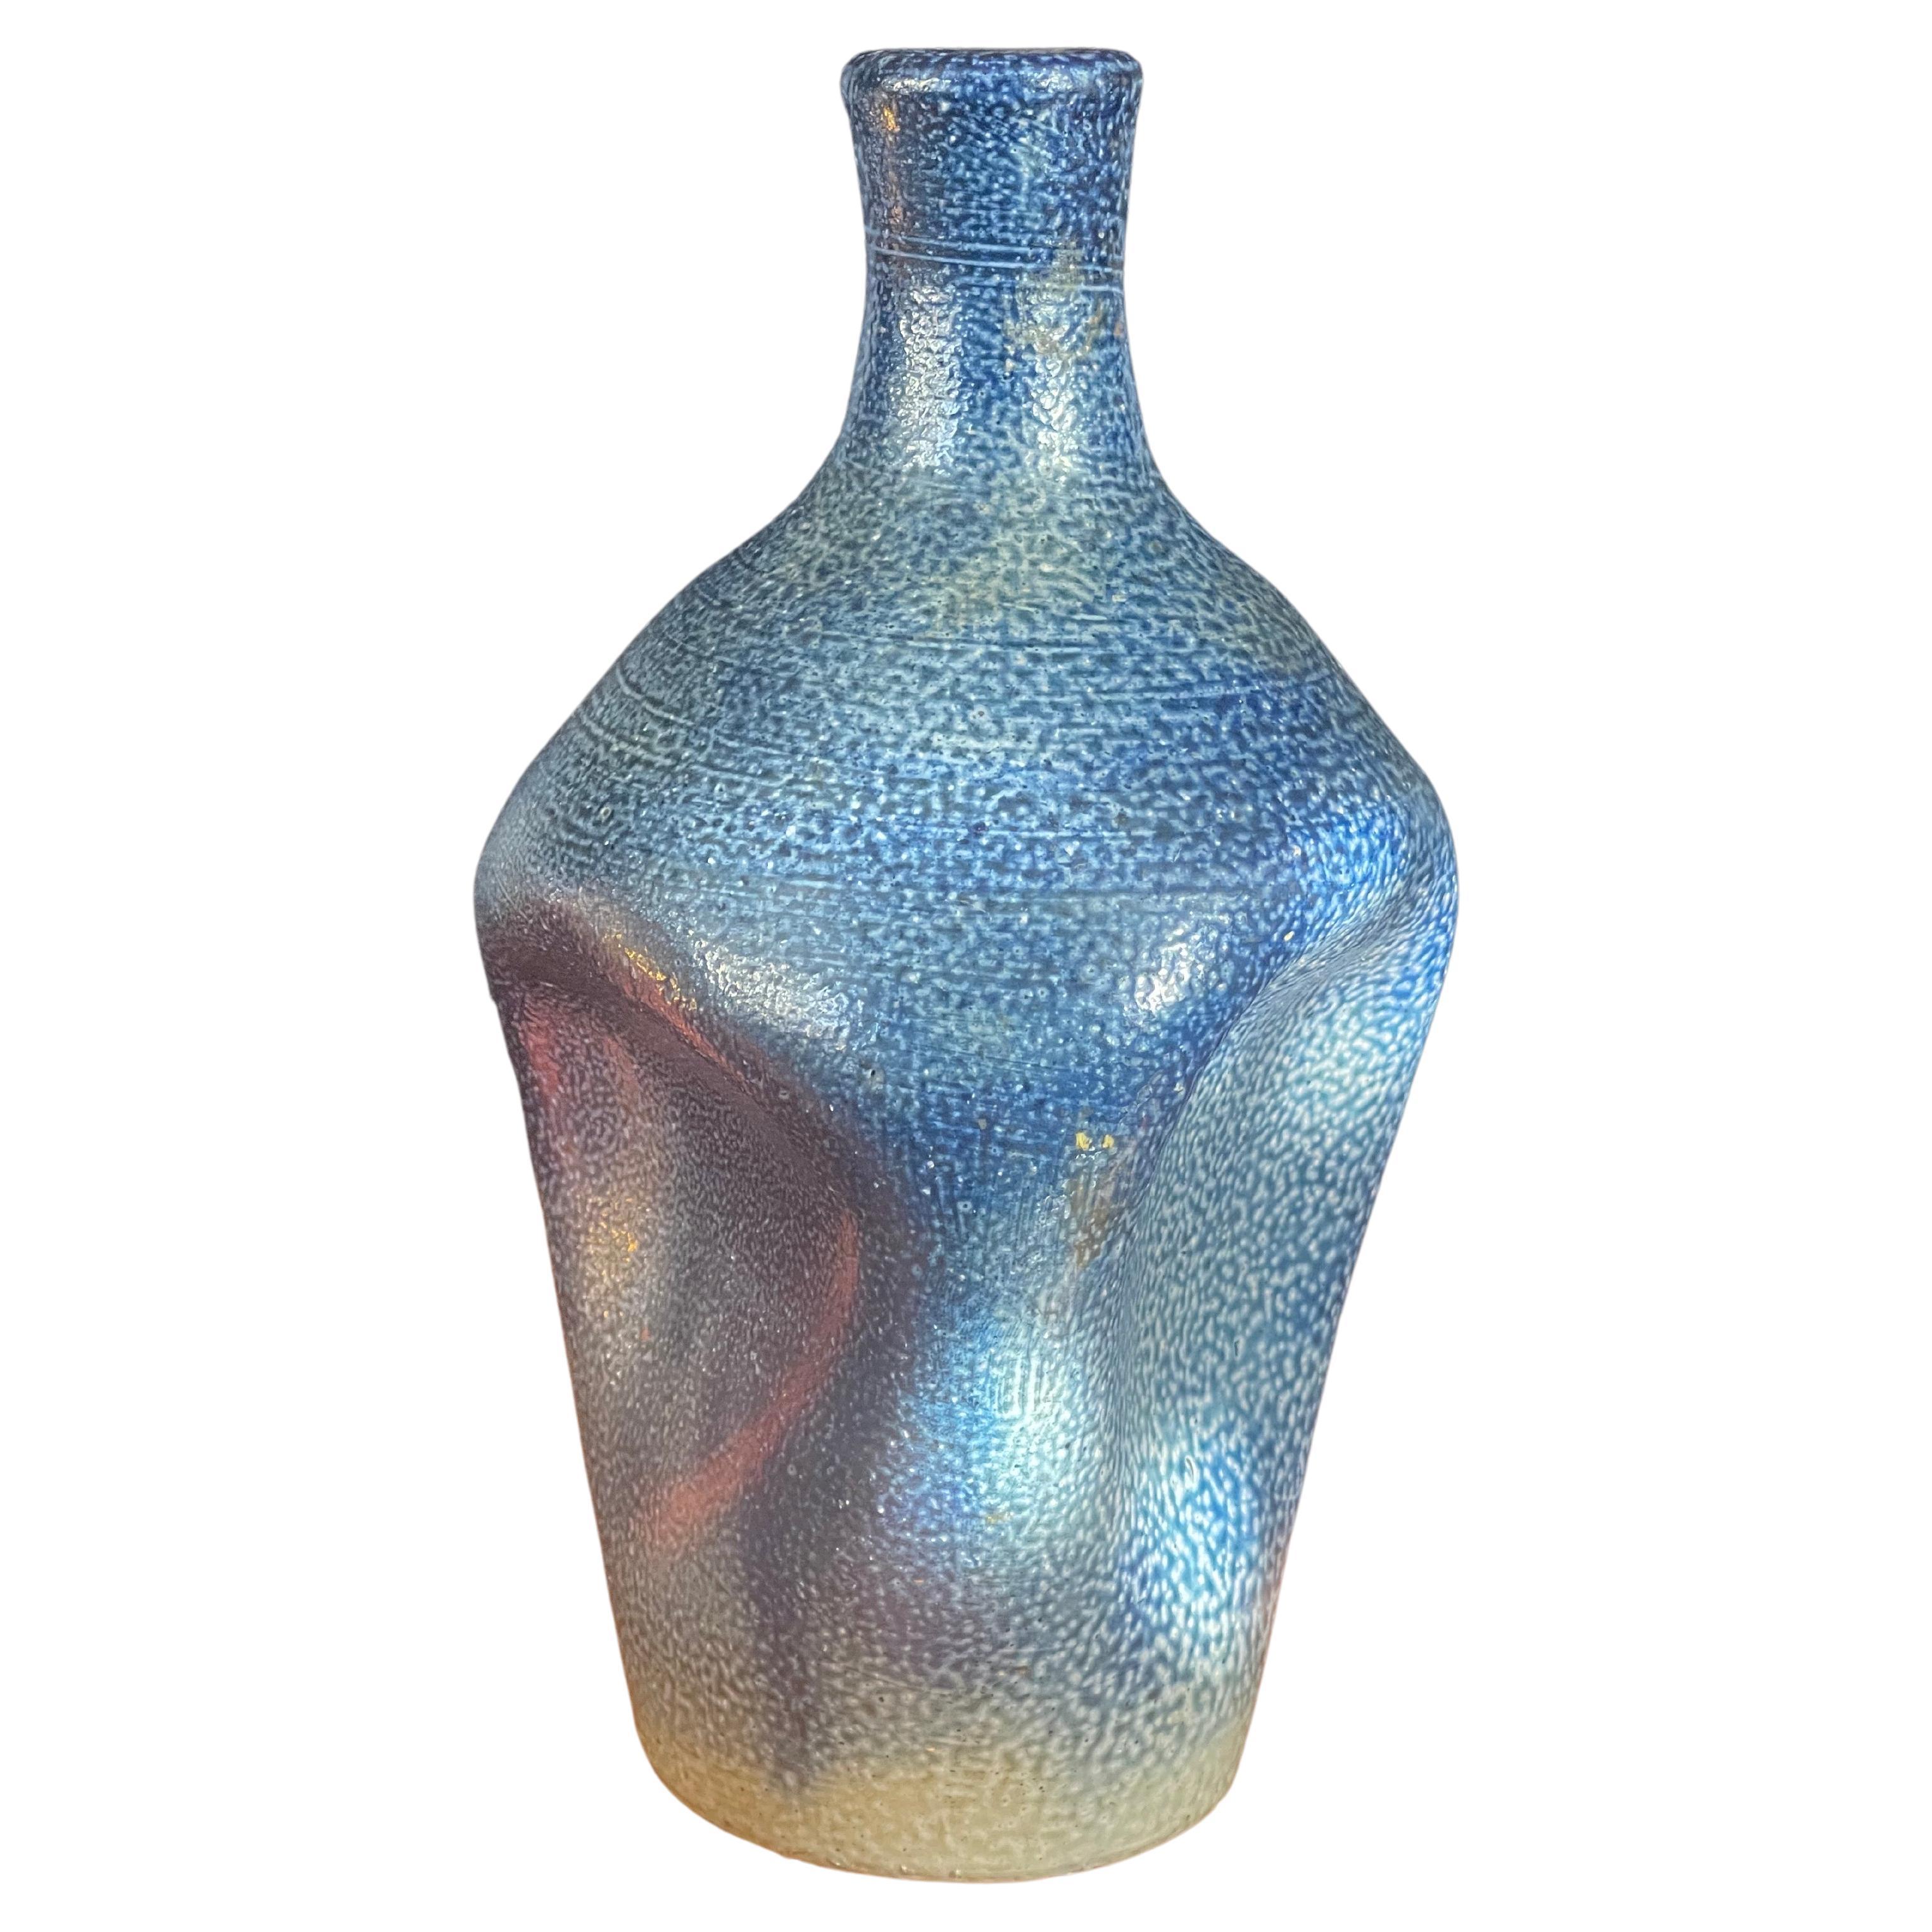 California Studio Pottery Vase mit Grübchen an den Seiten